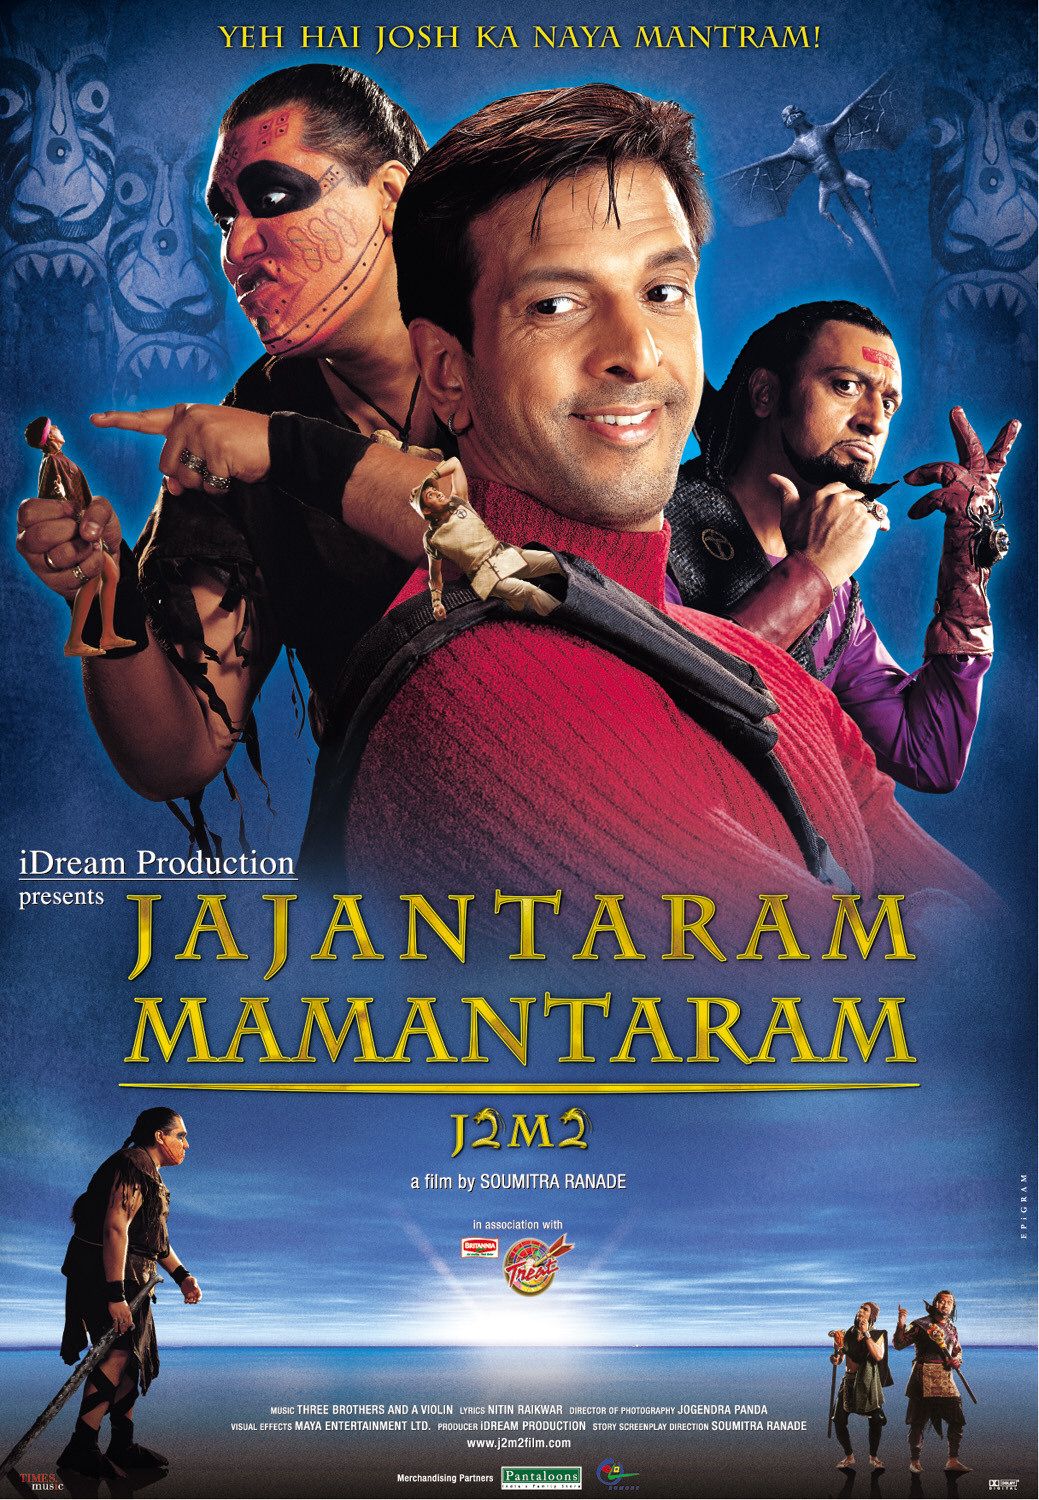 Jajantaram Mamantaram (2003) Screenshot 3